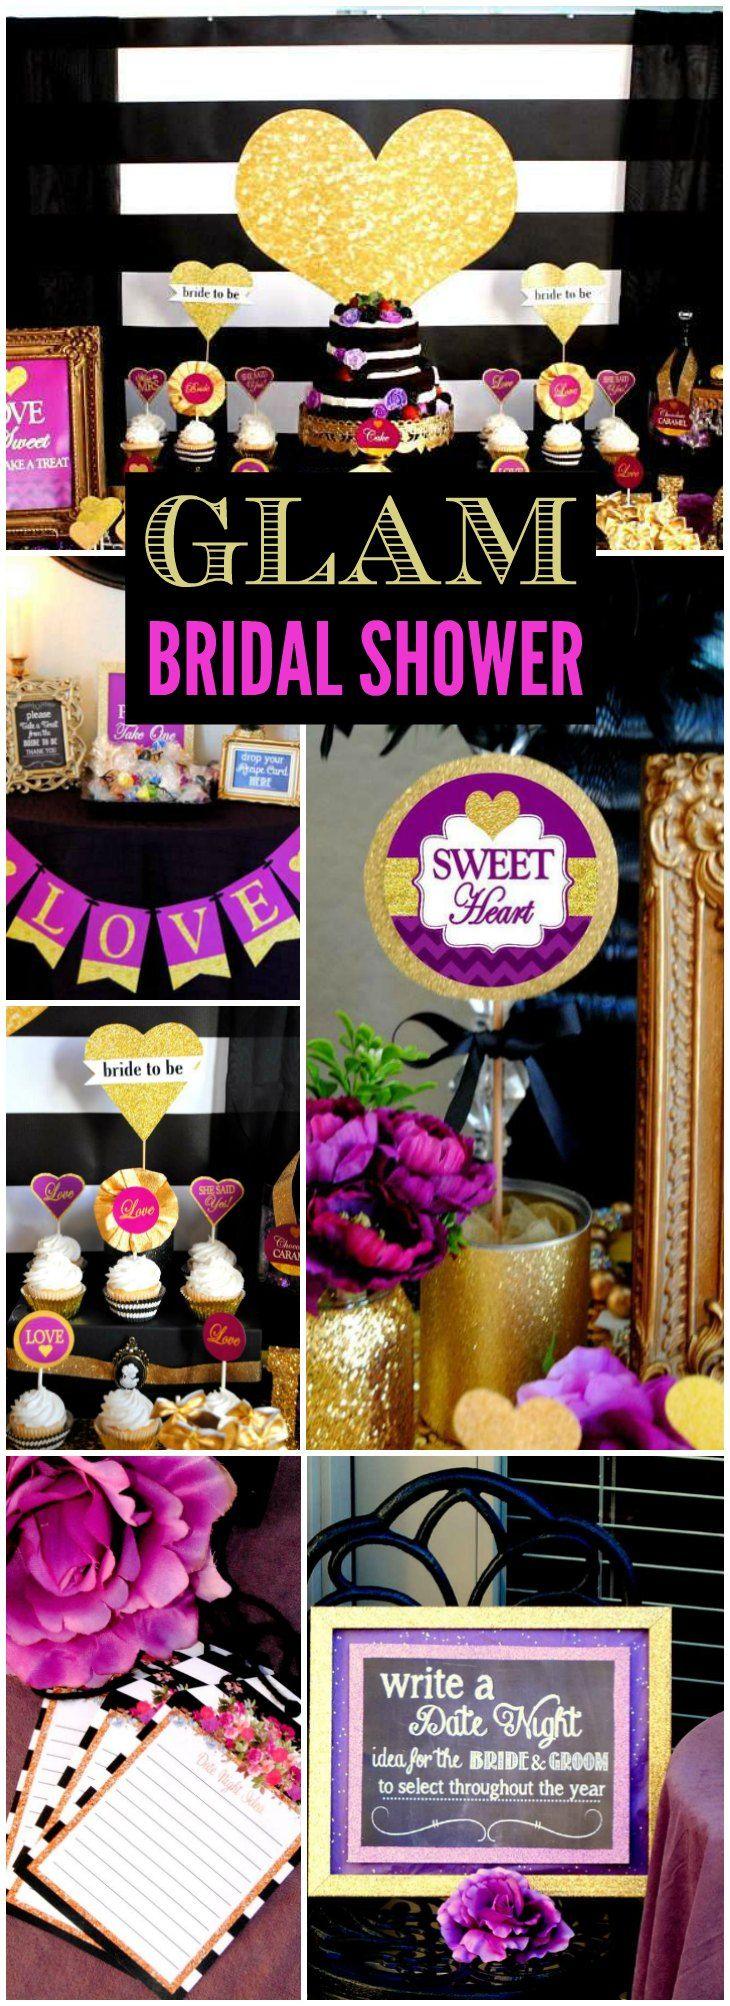 Wedding - Bridal/Wedding Shower "Let LOVE SPARKLE"